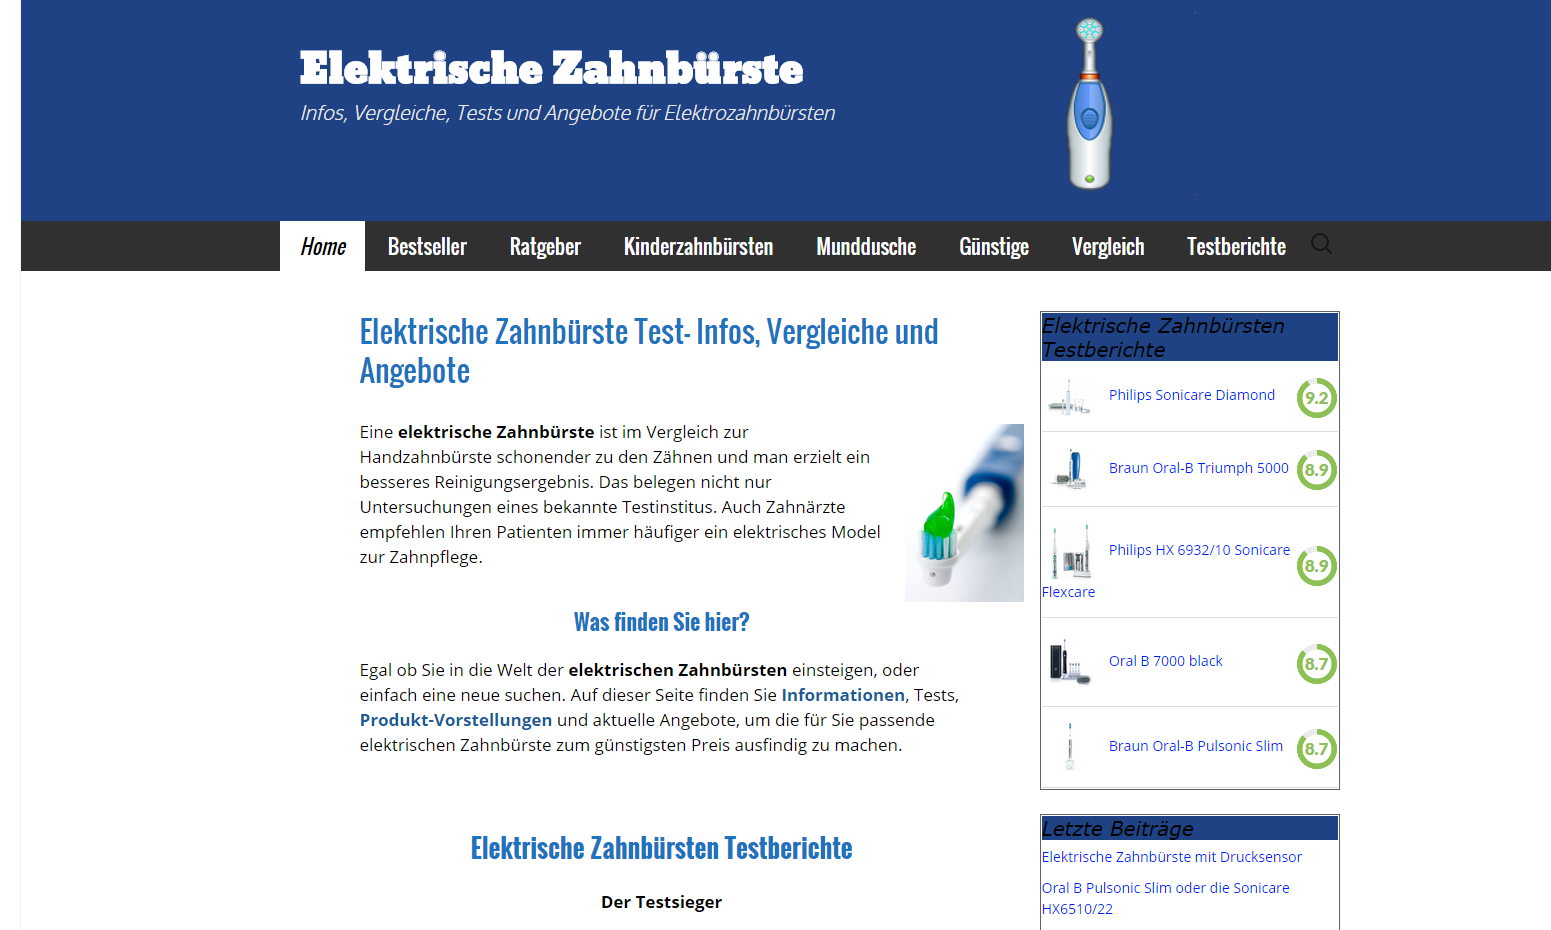 Details : Elektrische Zahnbürste Test- Infos, Vergleiche und Angebote